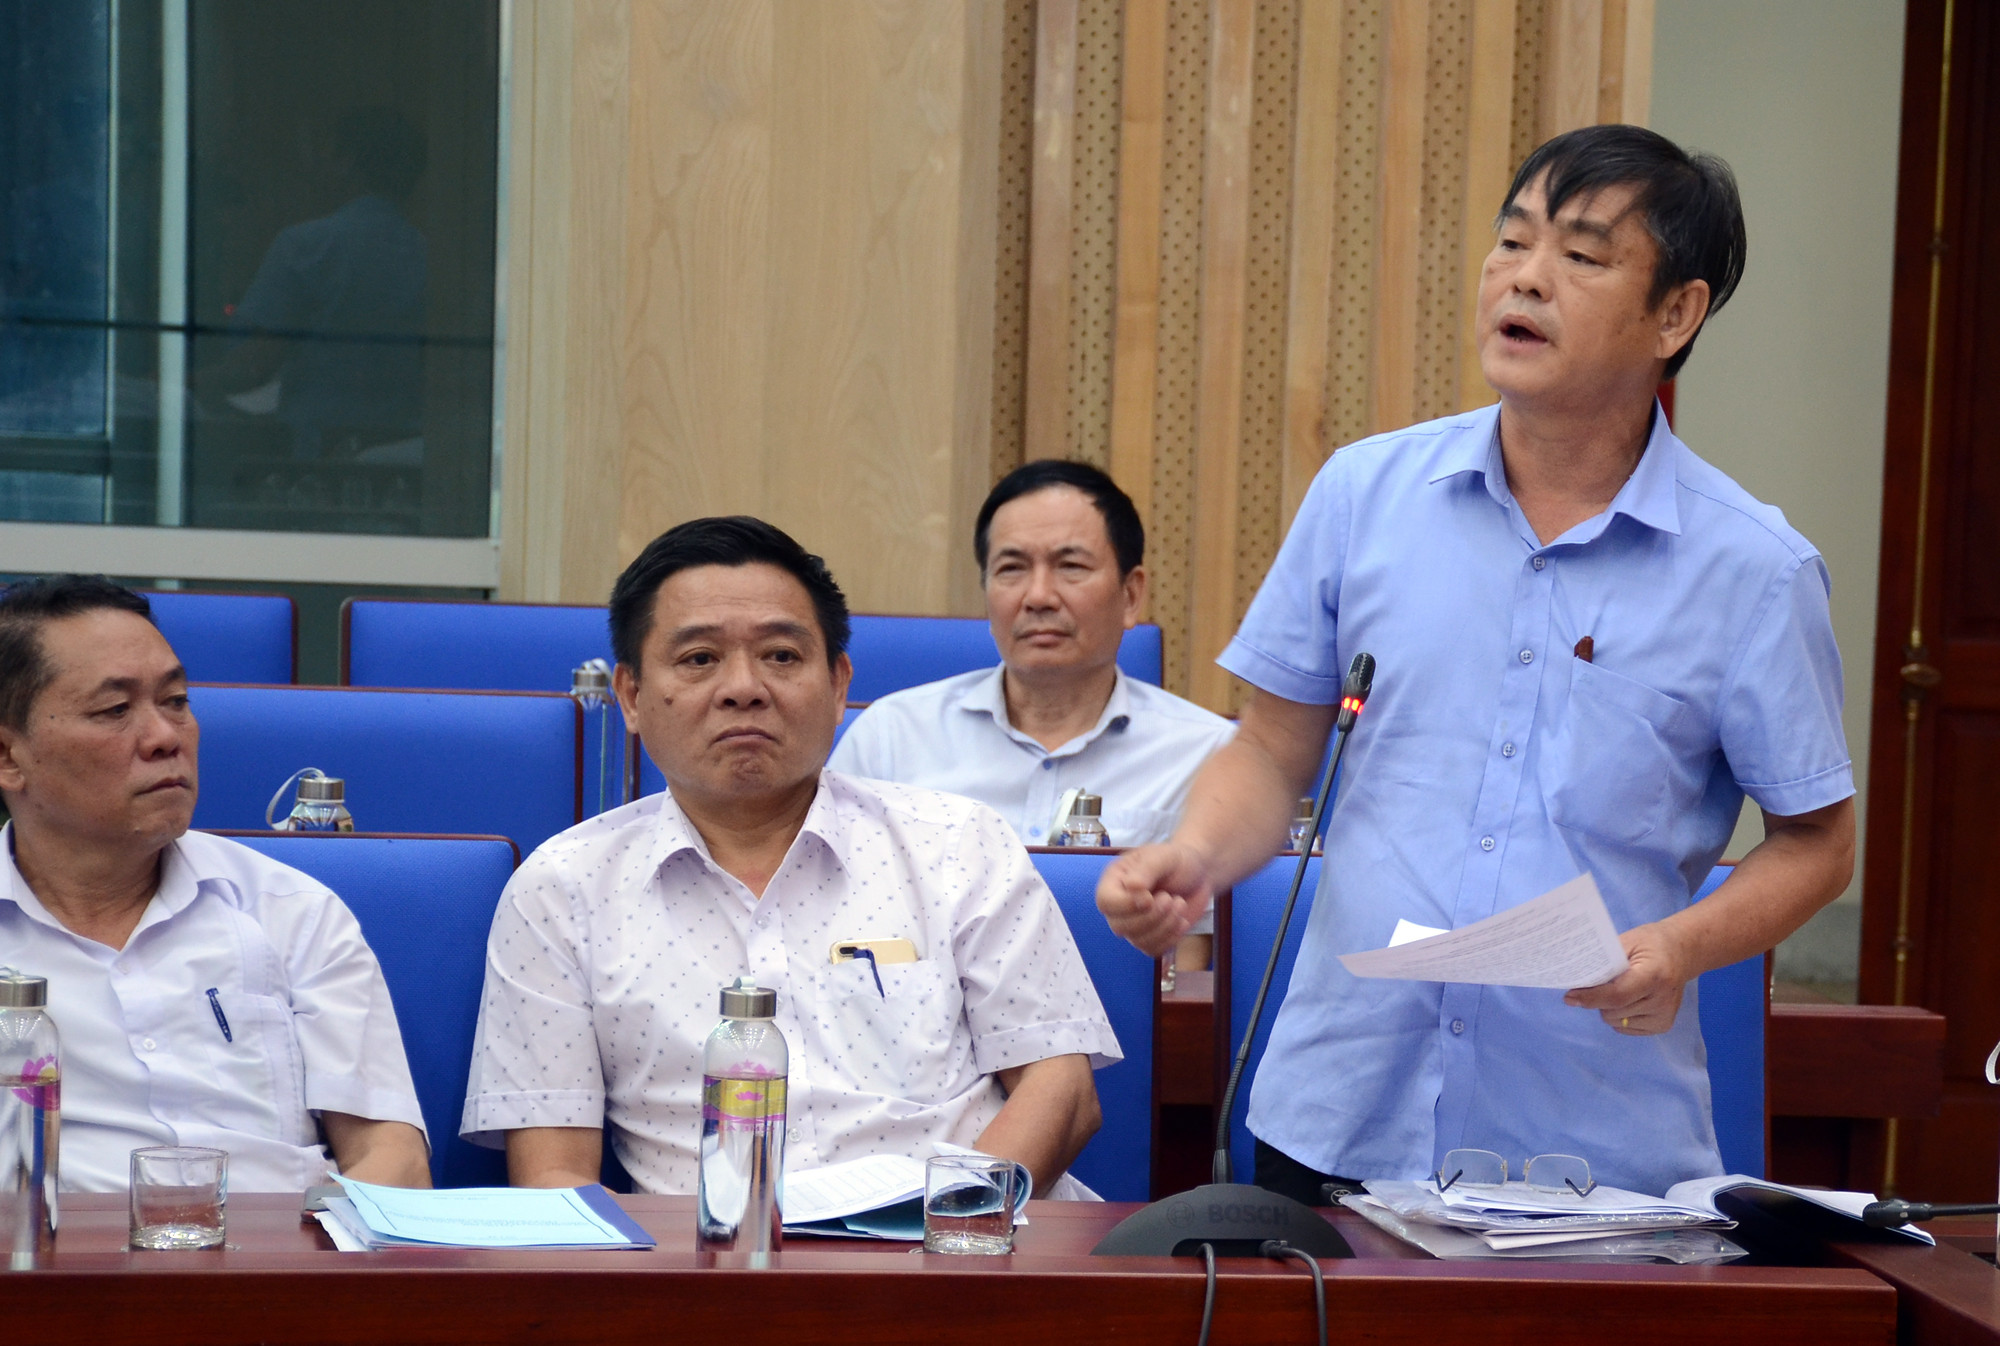 Bác sĩ Nguyễn Tất Hồng, Trưởng phòng Y tế huyện Đô Lương nêu những khó khăn, bất cập trong hoạt động quản lý hành nghề y dược ngoài công lập. Ảnh: Thành Chung